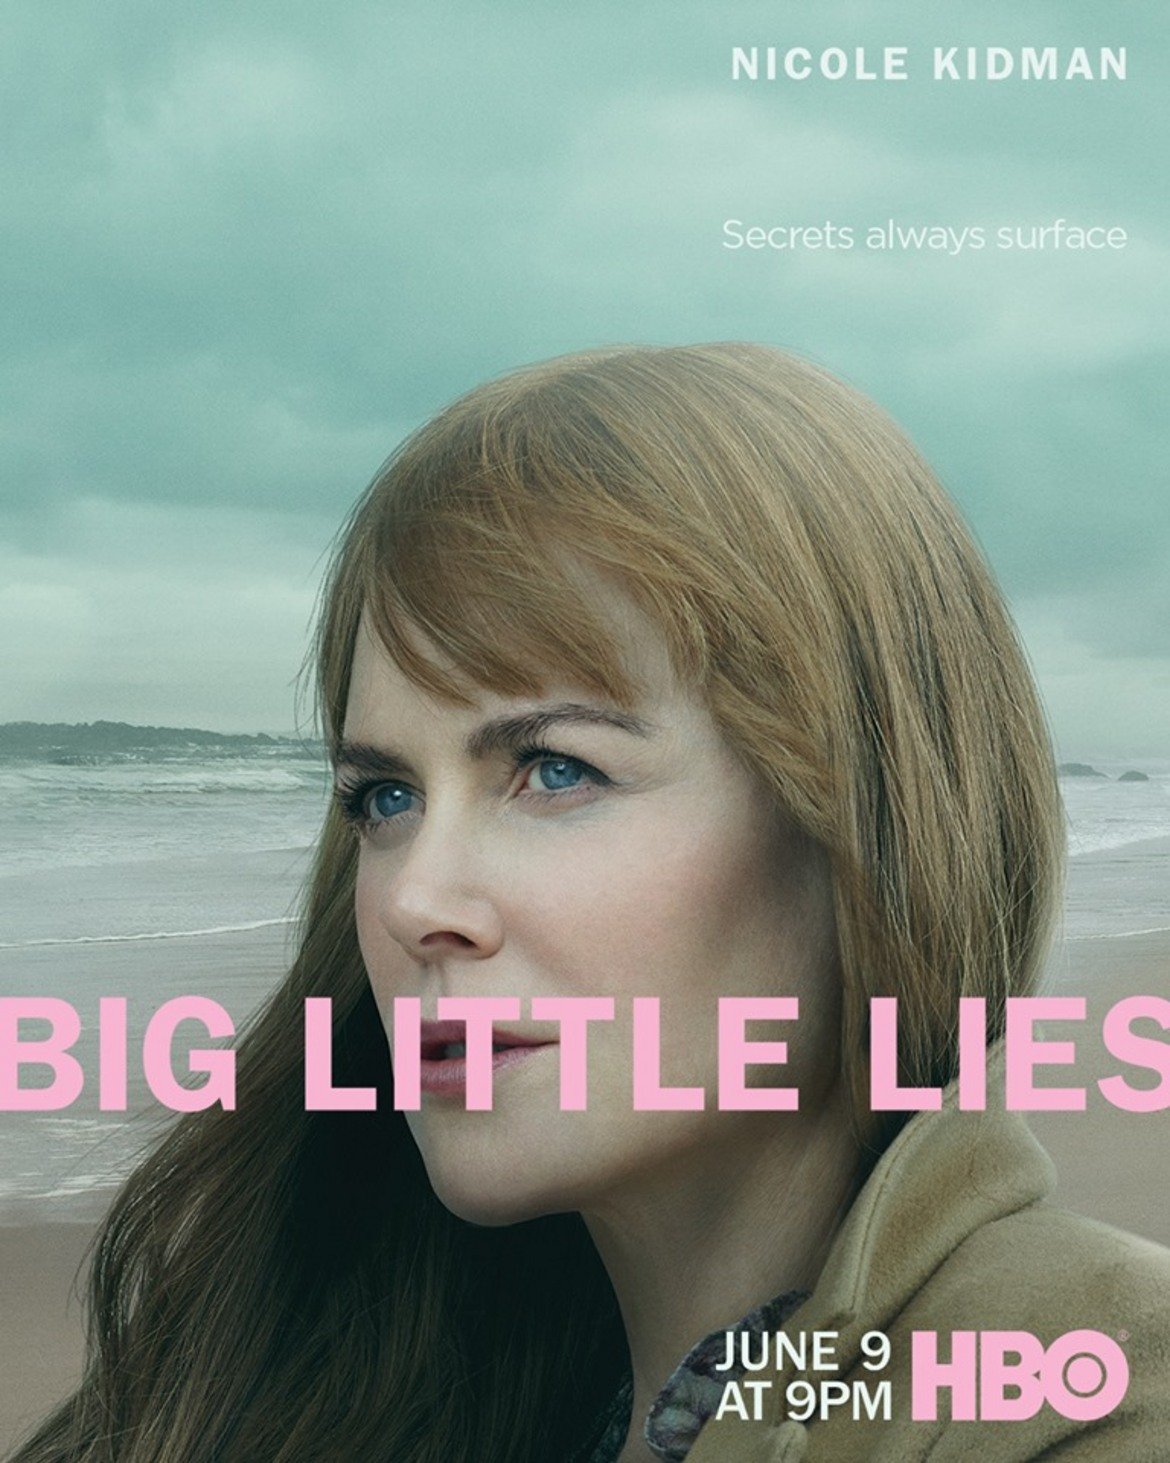 Сериалът тръгва с цяла серия плакати, на които устите на героините са закрити от заглавието "Големите малки лъжи", а над тях левитира надпис: "Тайните винаги изплуват"